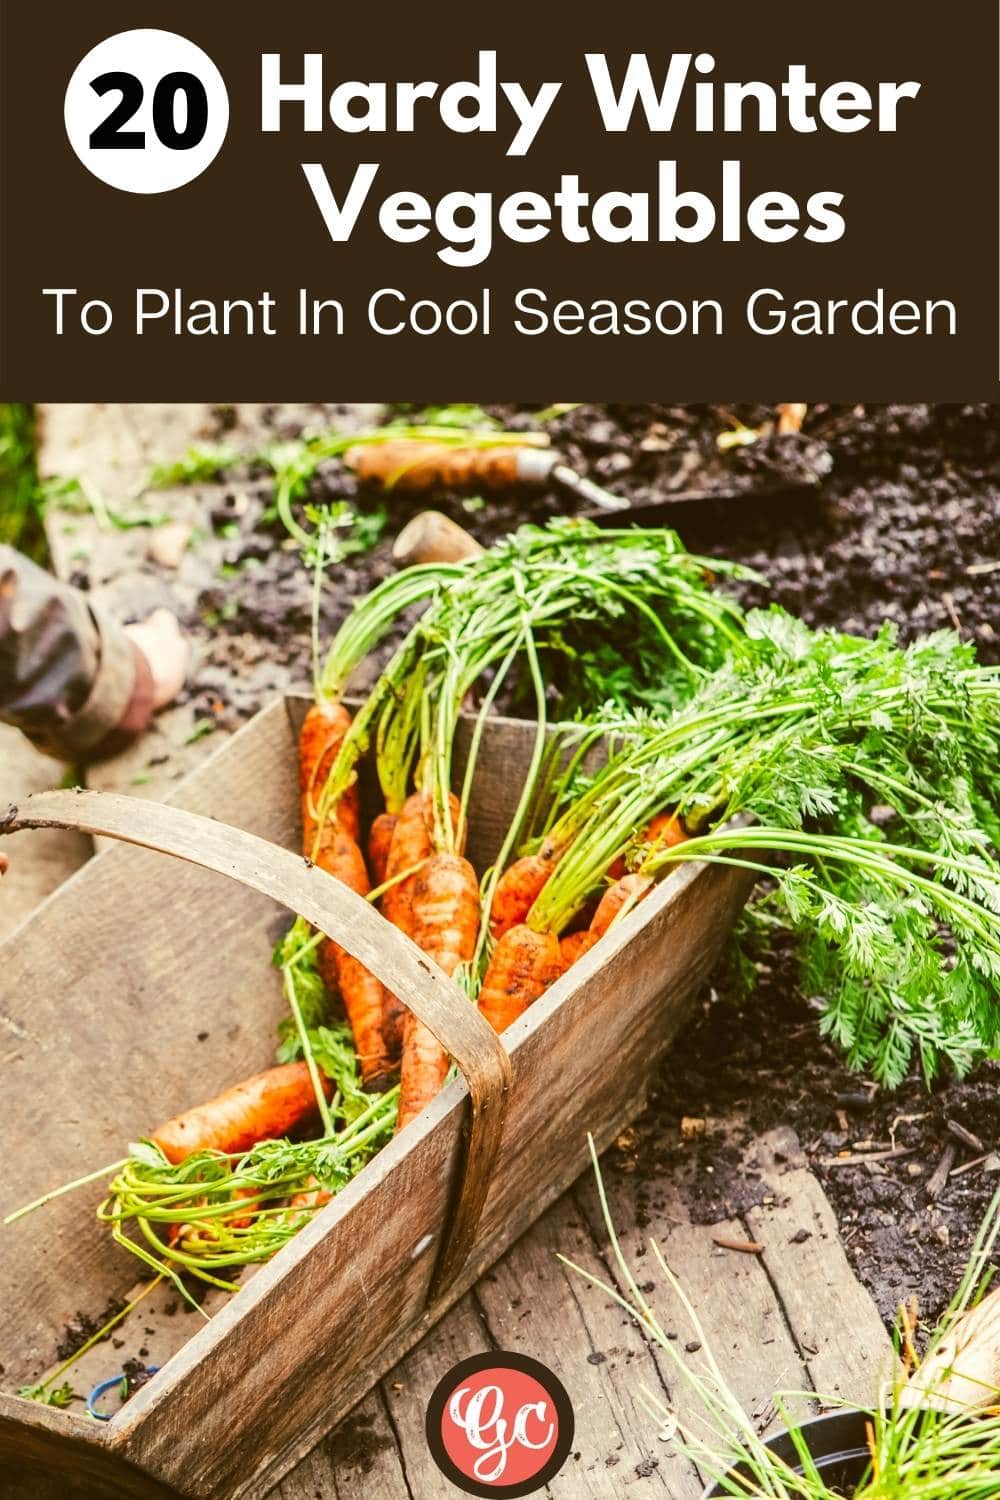  20 legumes de inverno resistentes ao frio para plantar e colher no seu jardim de estação fria